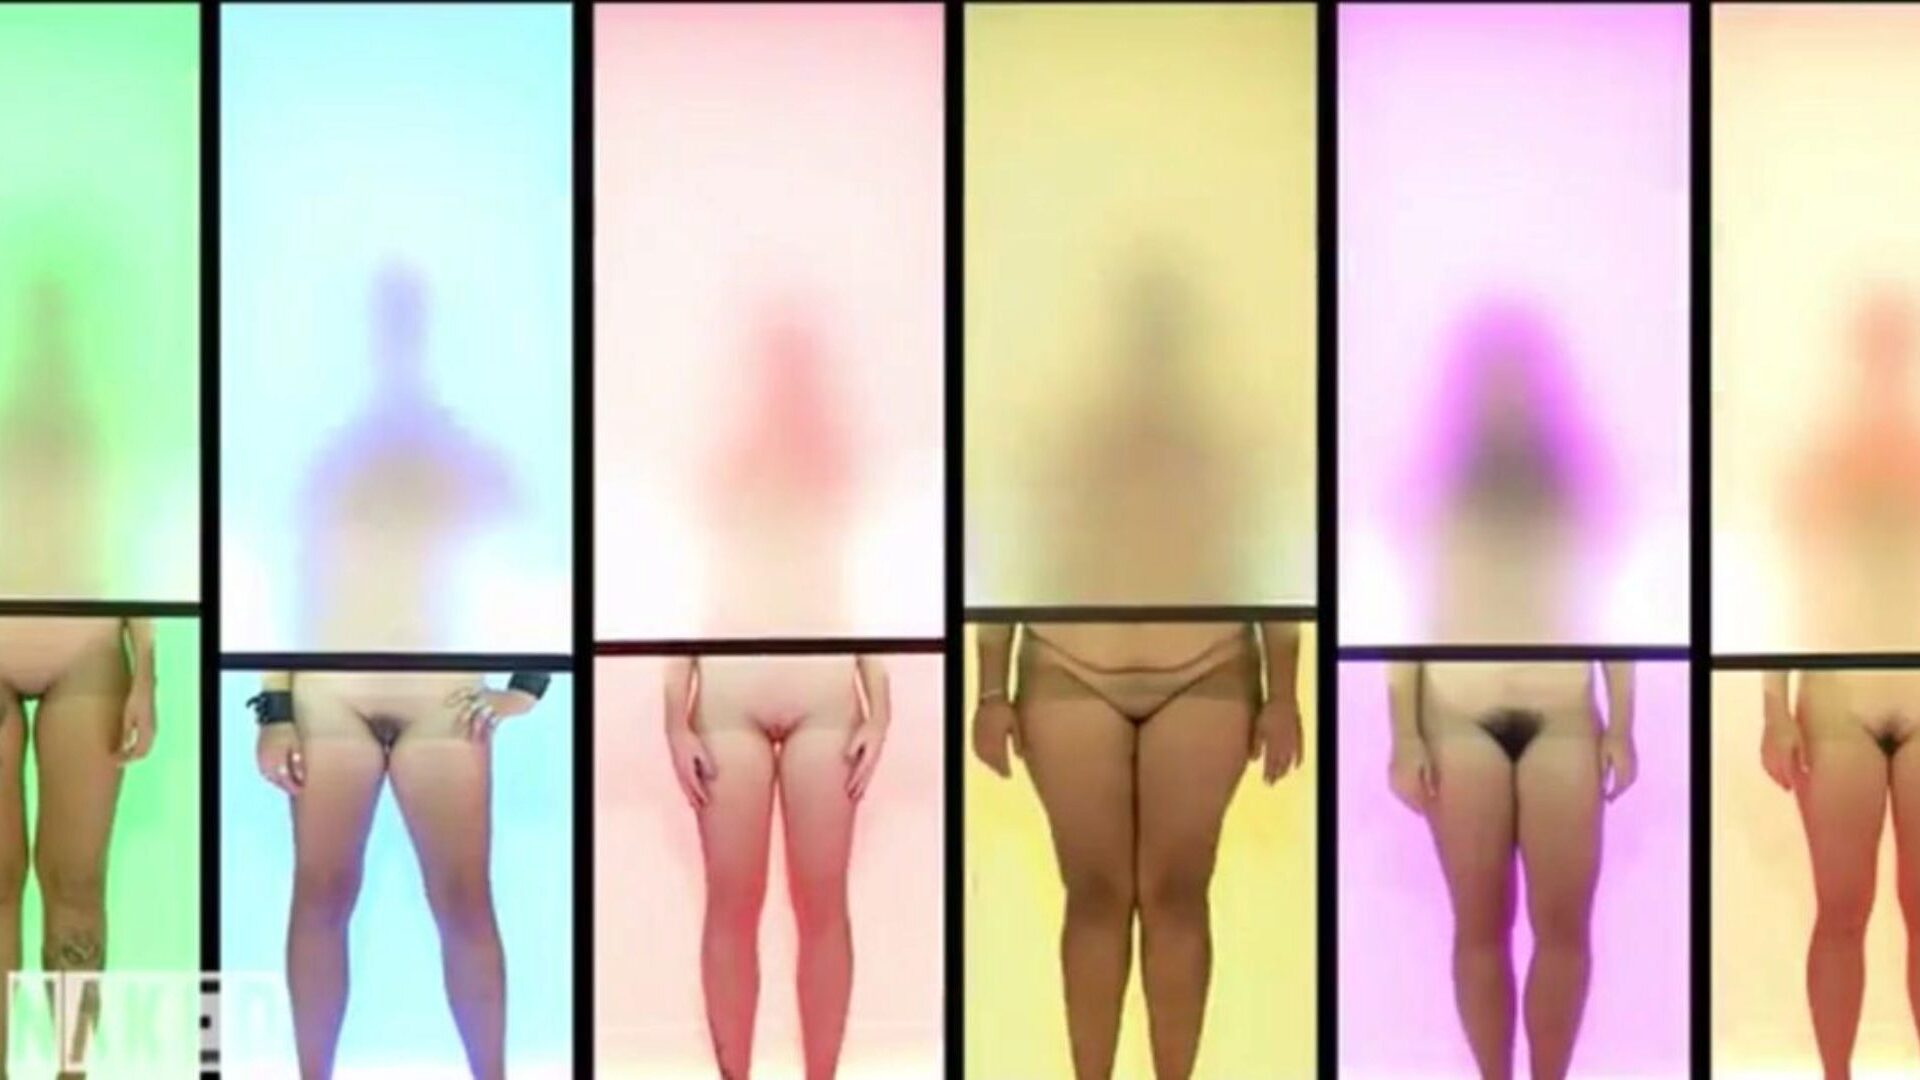 atracción desnuda versión alemana clip 7, porno c3: xhamster ver película atracción desnuda versión alemana clip 7 en xhamster, el sitio de tubo hd más excelente con toneladas de alemanes desnudos alemanes desnudos y clips porno desnudos